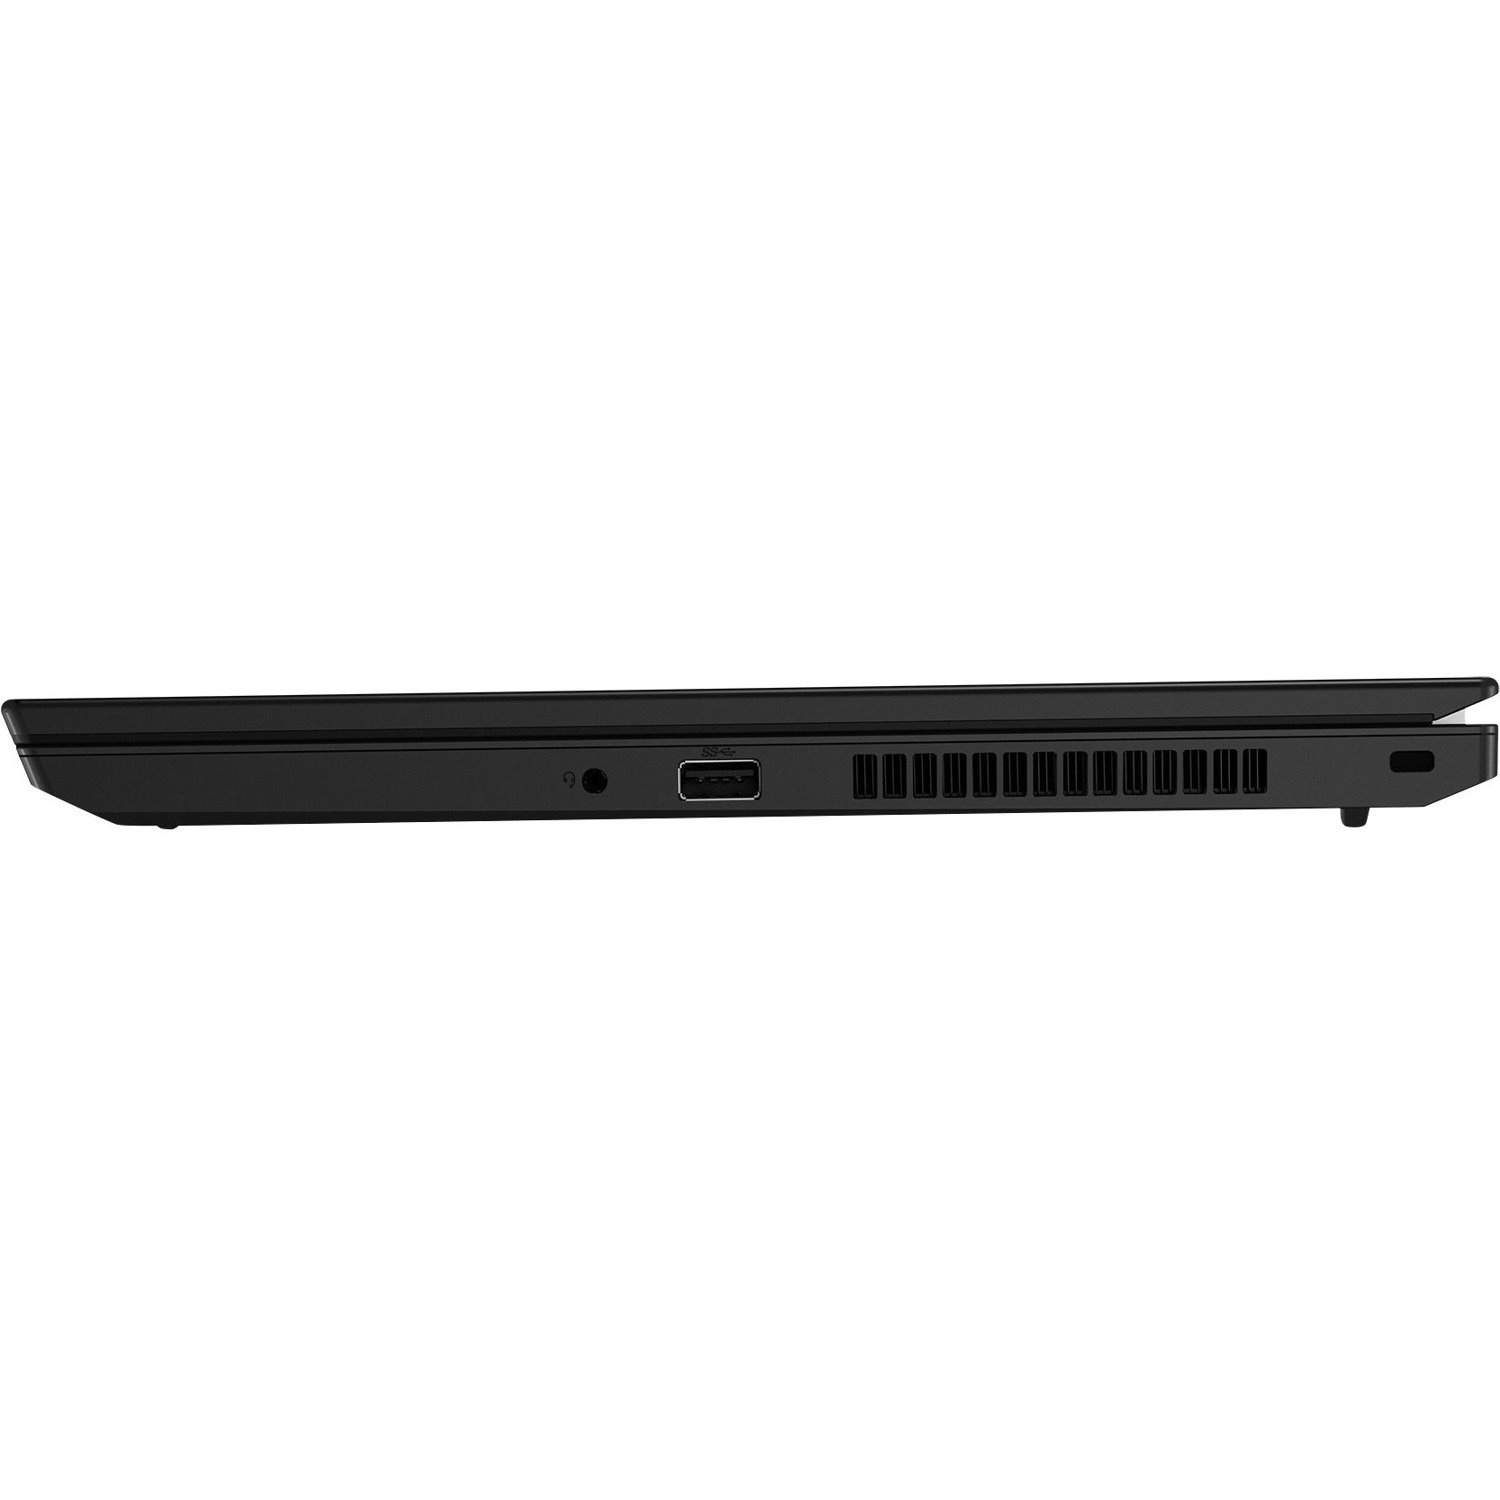 Lenovo ThinkPad L15 Gen2 20X3005UAU 39.6 cm (15.6") Notebook - Full HD - 1920 x 1080 - Intel Core i5 11th Gen i5-1135G7 Quad-core (4 Core) 2.40 GHz - 8 GB RAM - 256 GB SSD - Black